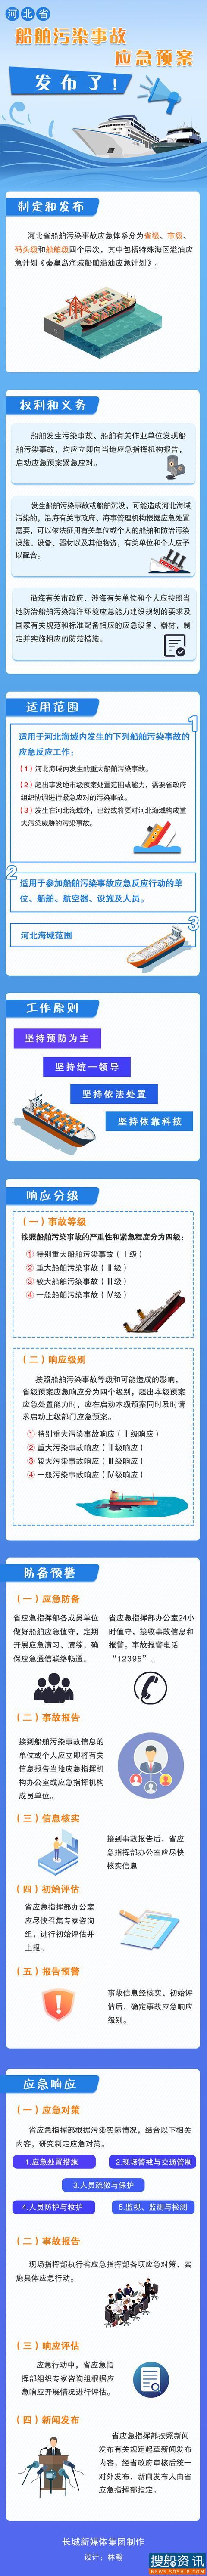 《河北省船舶污染事故应急预案》发布了